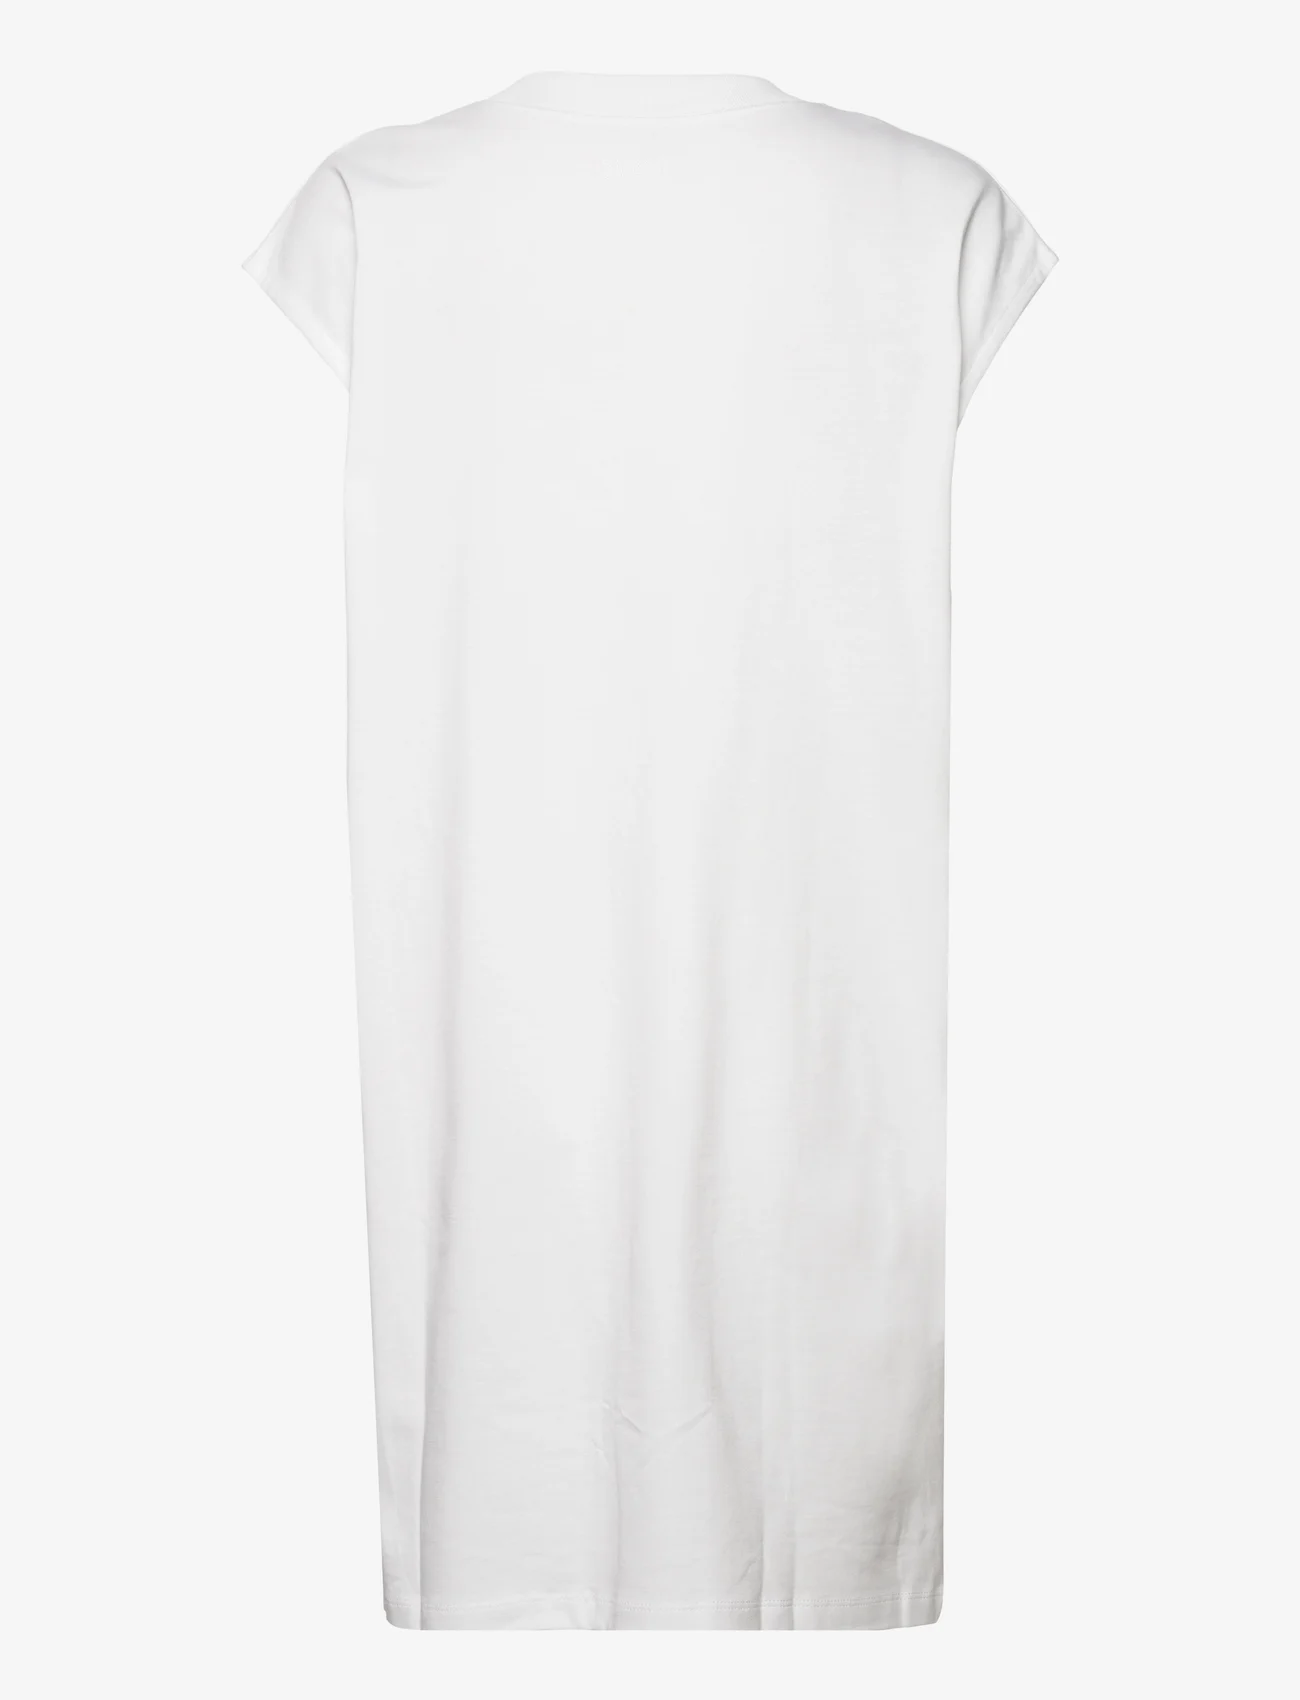 House Of Dagmar - Maggie dress - t-shirt dresses - white - 1